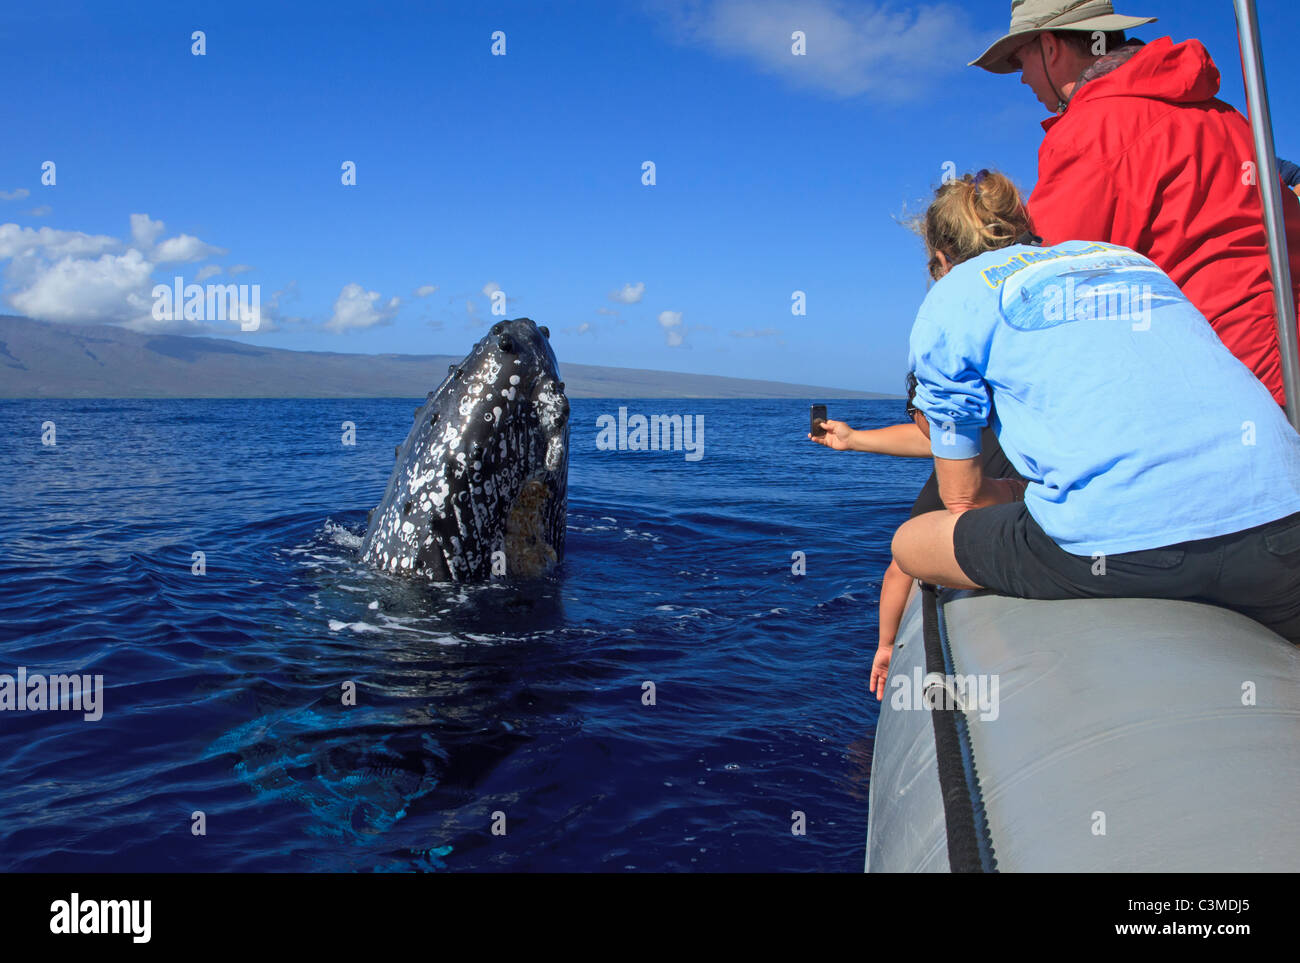 la-ballena-jorobada-llega-a-mirar-a-la-gente-en-un-barco-maui-hawaii-c3mdj5.jpg